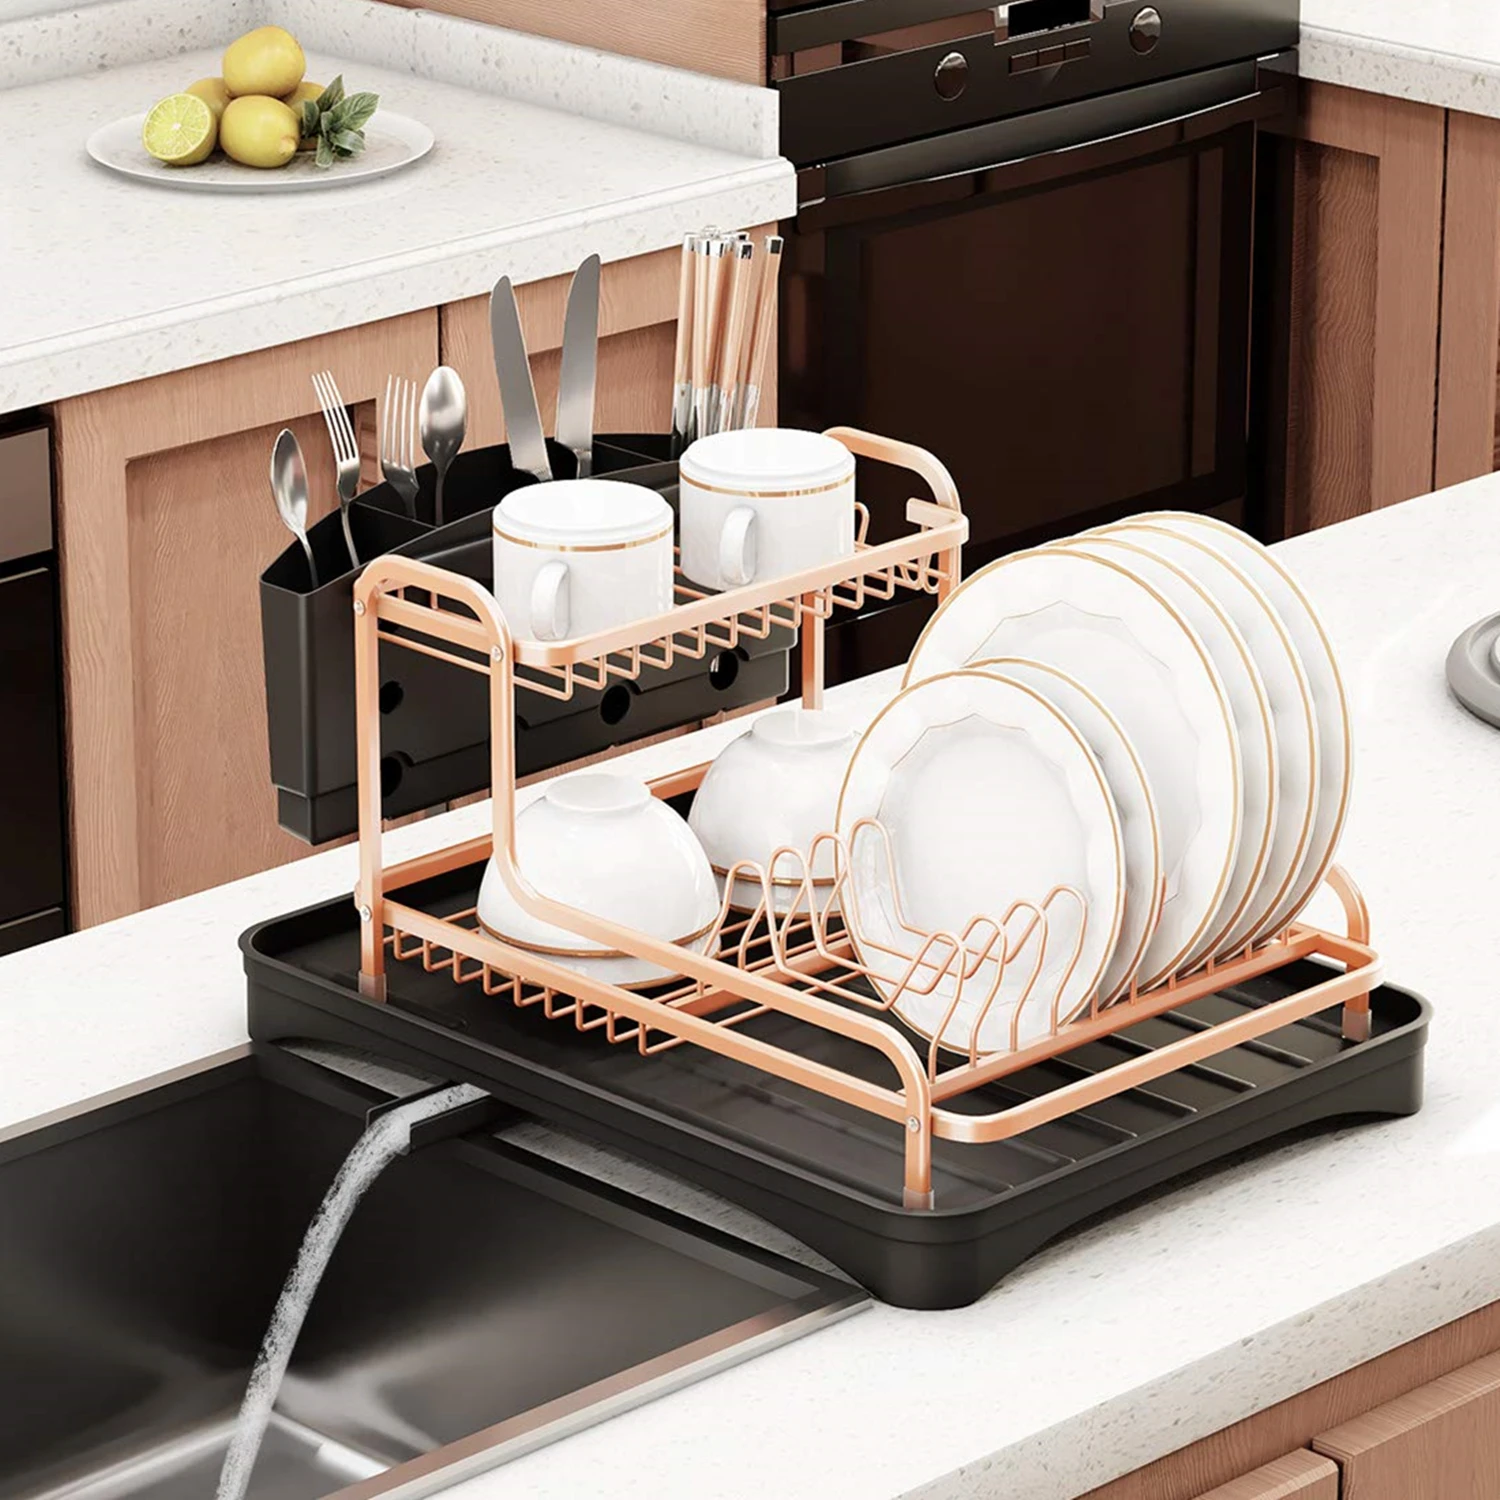 2 Tier Dish Rack Drainer Rose Gold Kitchen Sink Organiser Cutlery Holder